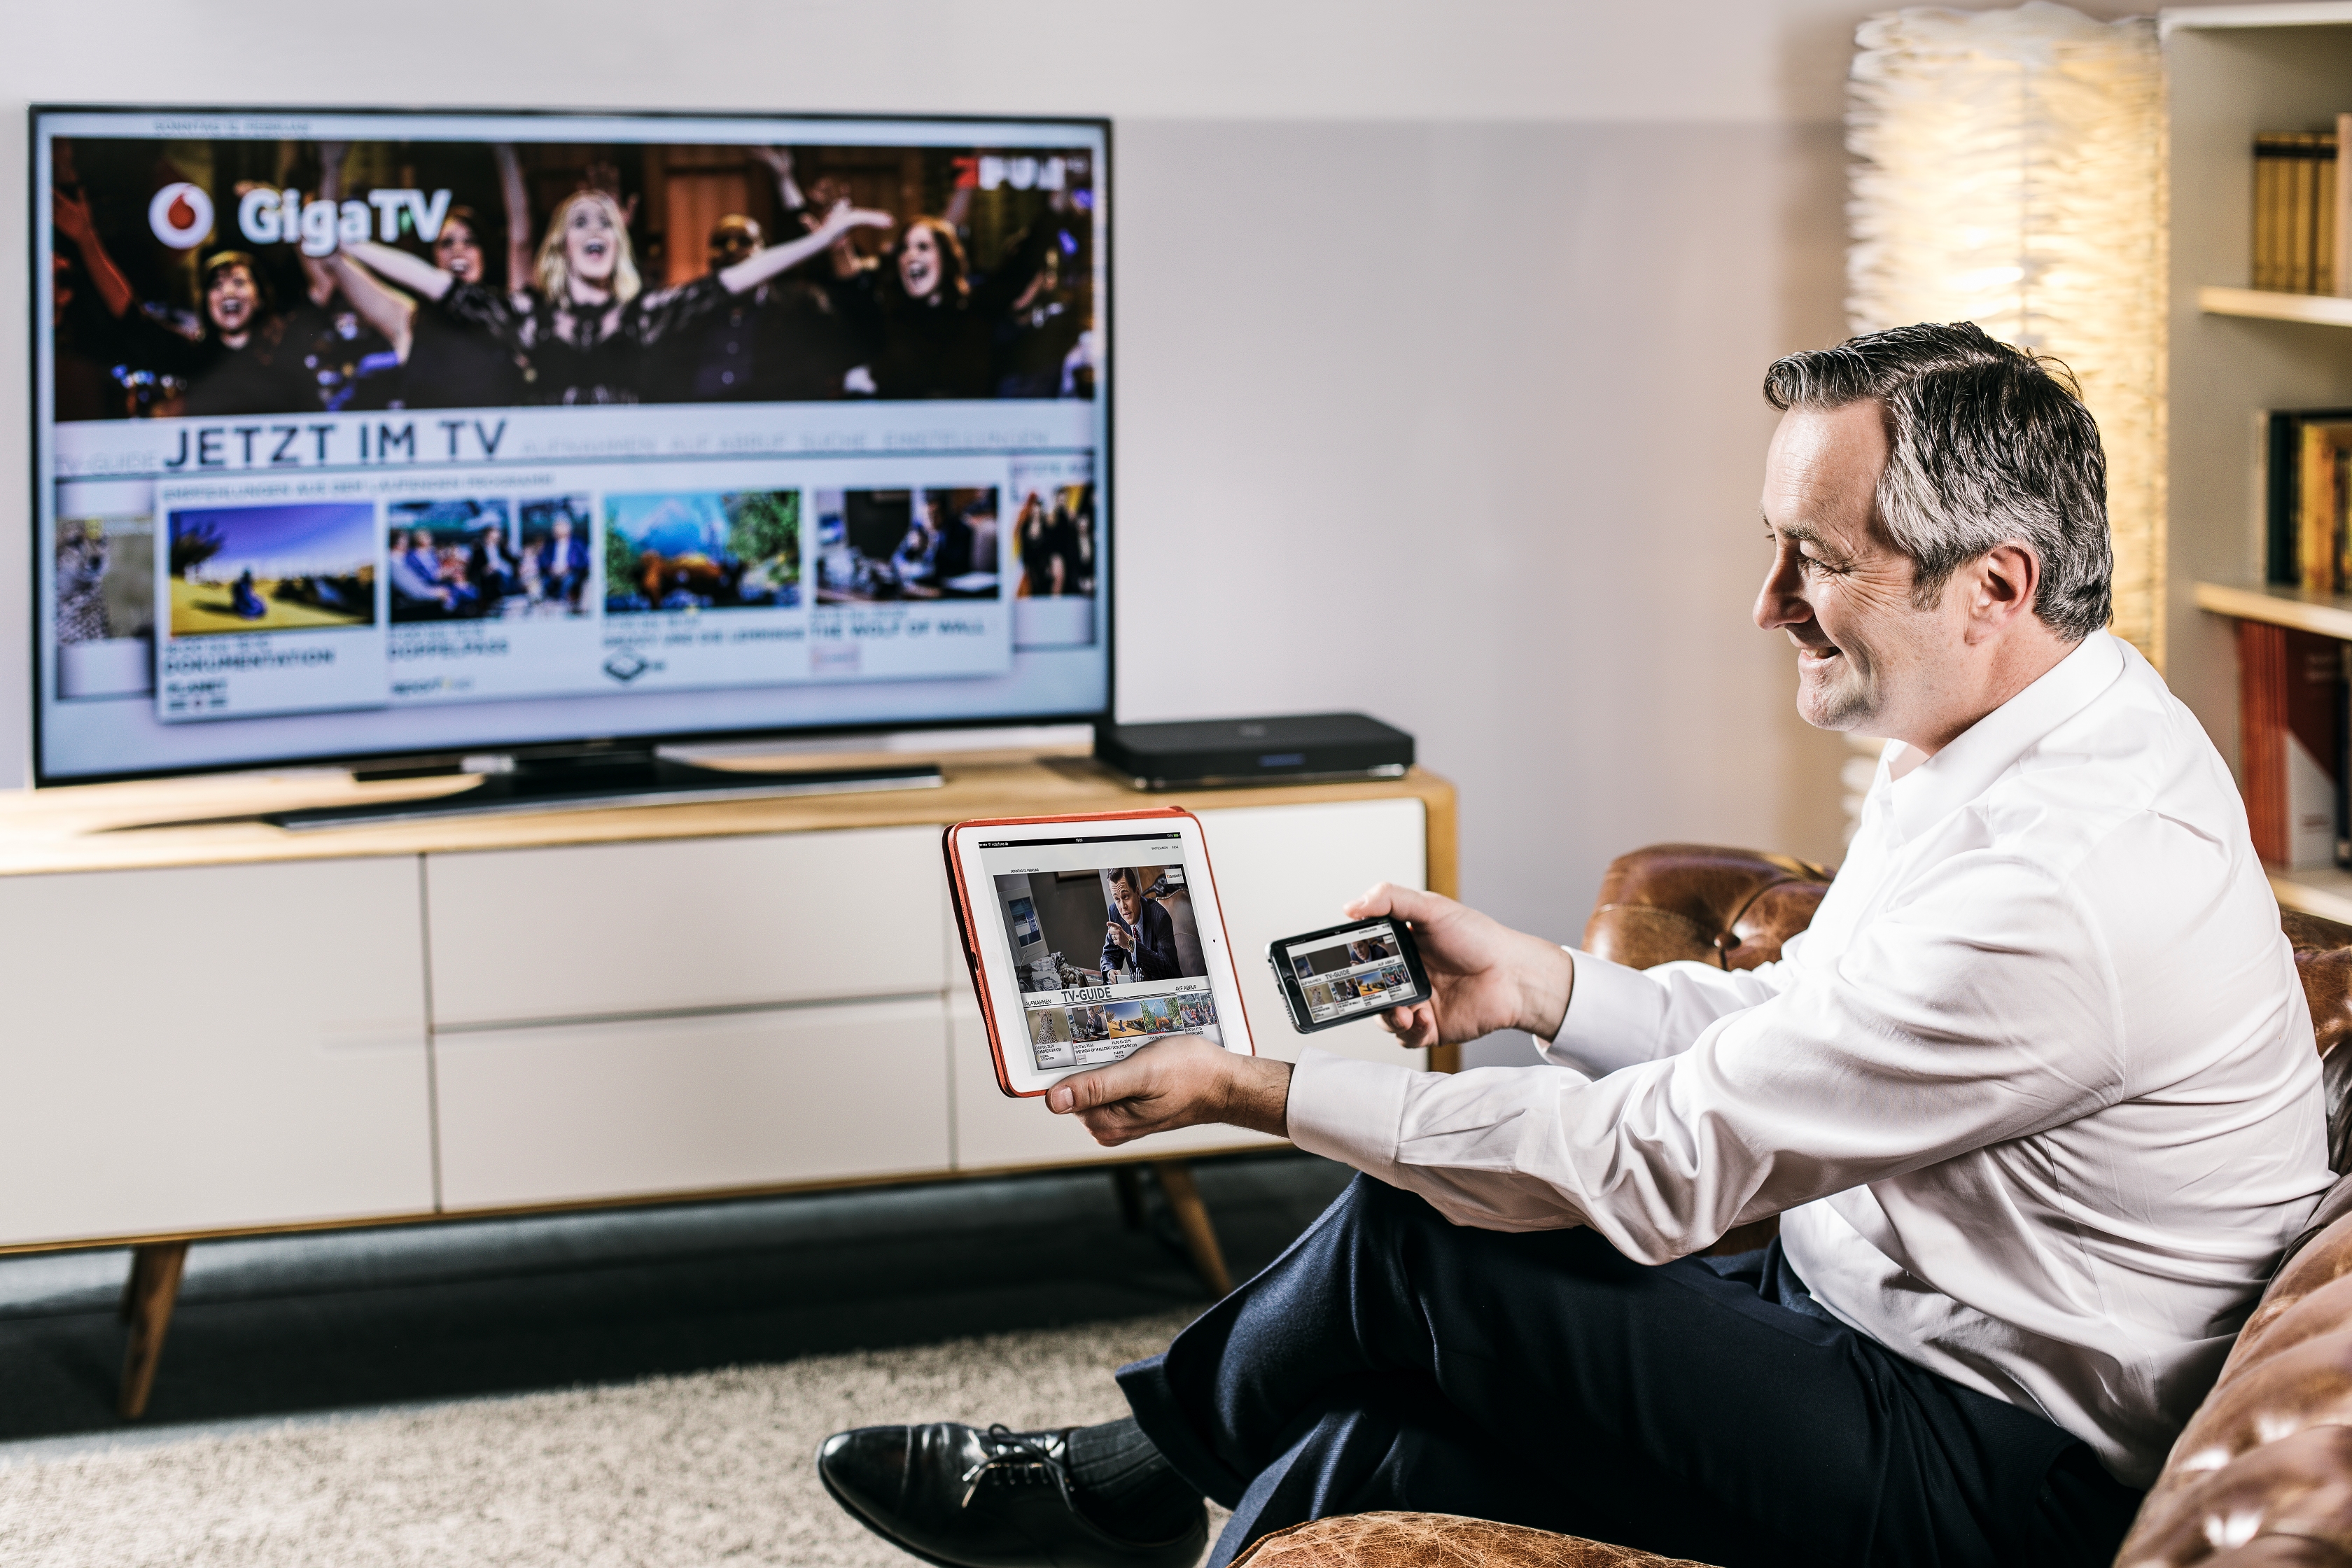 GigaTV – die neue Fernseh-Plattform von Vodafone Deutschland